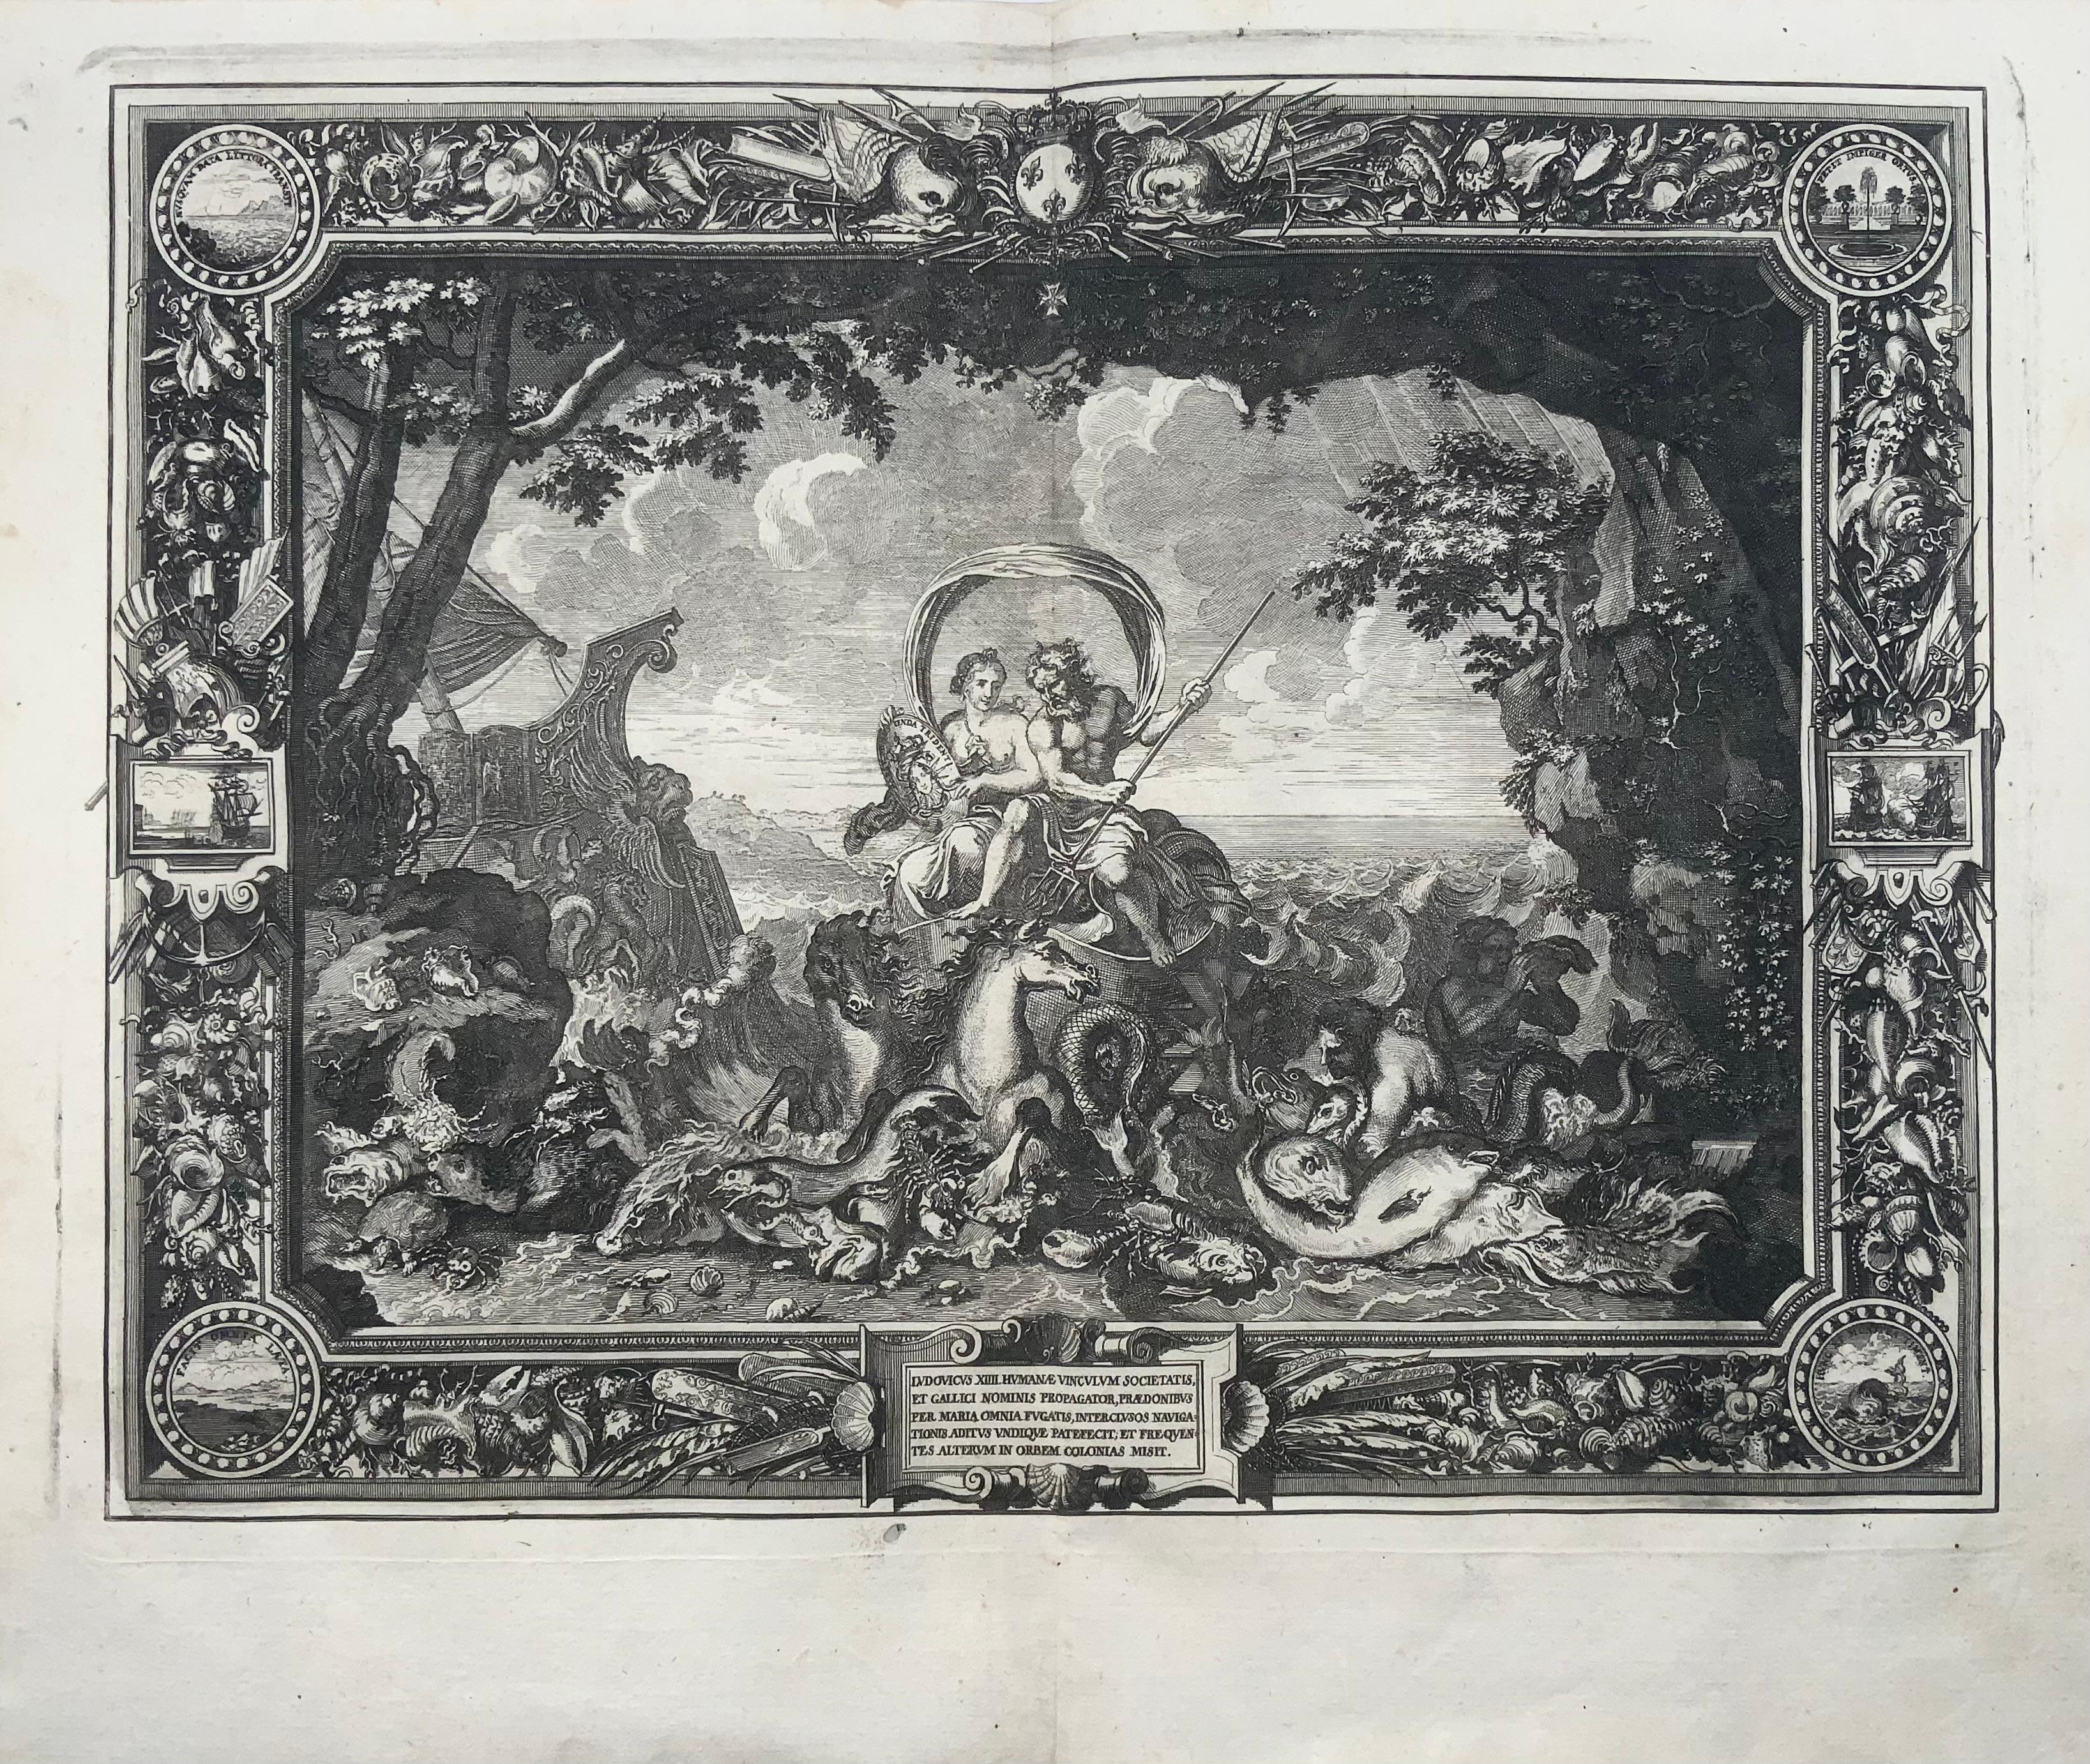 Stellt das Element Wasser dar und zeigt Neptun und THETIS auf einem von Seepferden gezogenen Streitwagen.

Radierung mit Kupferstich von Sébastien Leclerc aus dem Jahr 1679, nach Wandteppichen von Charles Le Brun. 

Größe: ca. 30,5 x 37 cm.